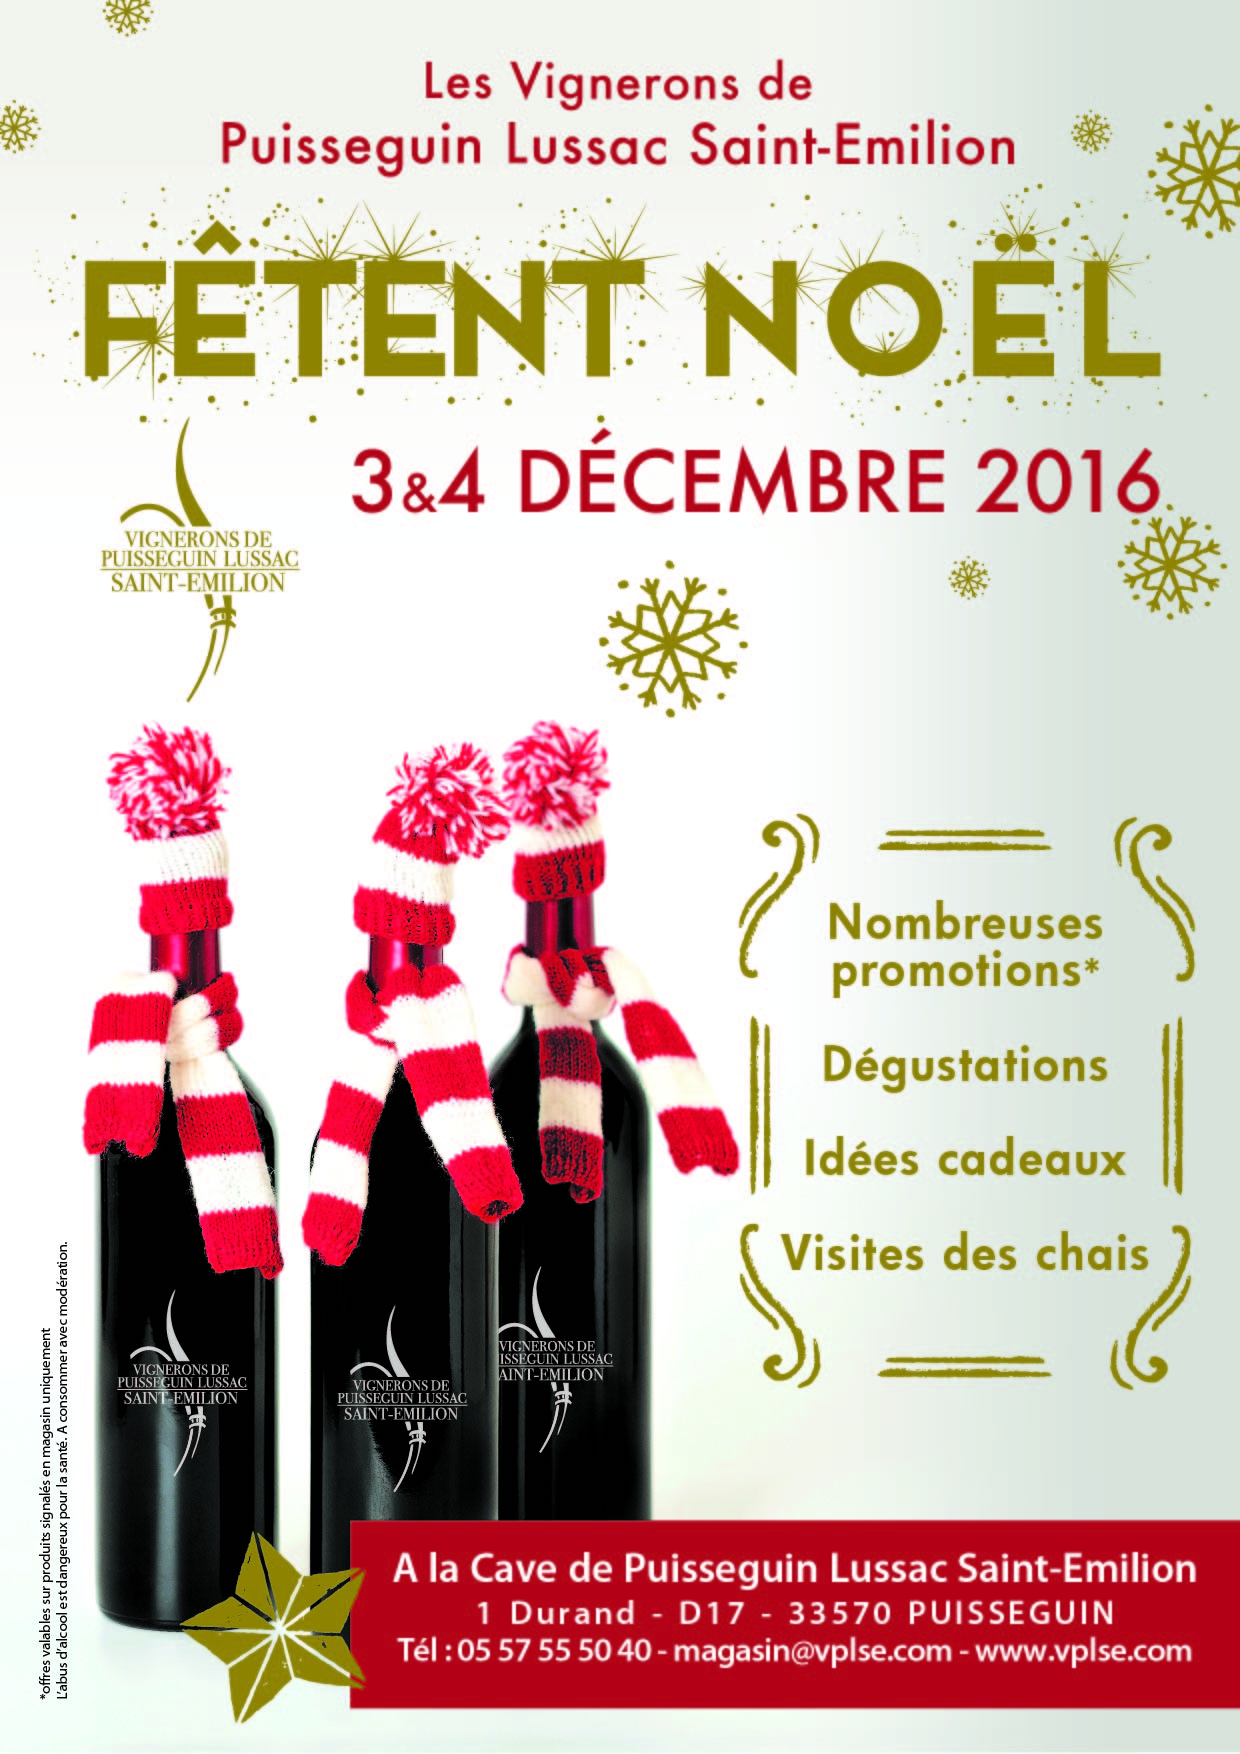 Les Vignerons de Puisseguin Lussac Saint-Emilion fêtent Noel !